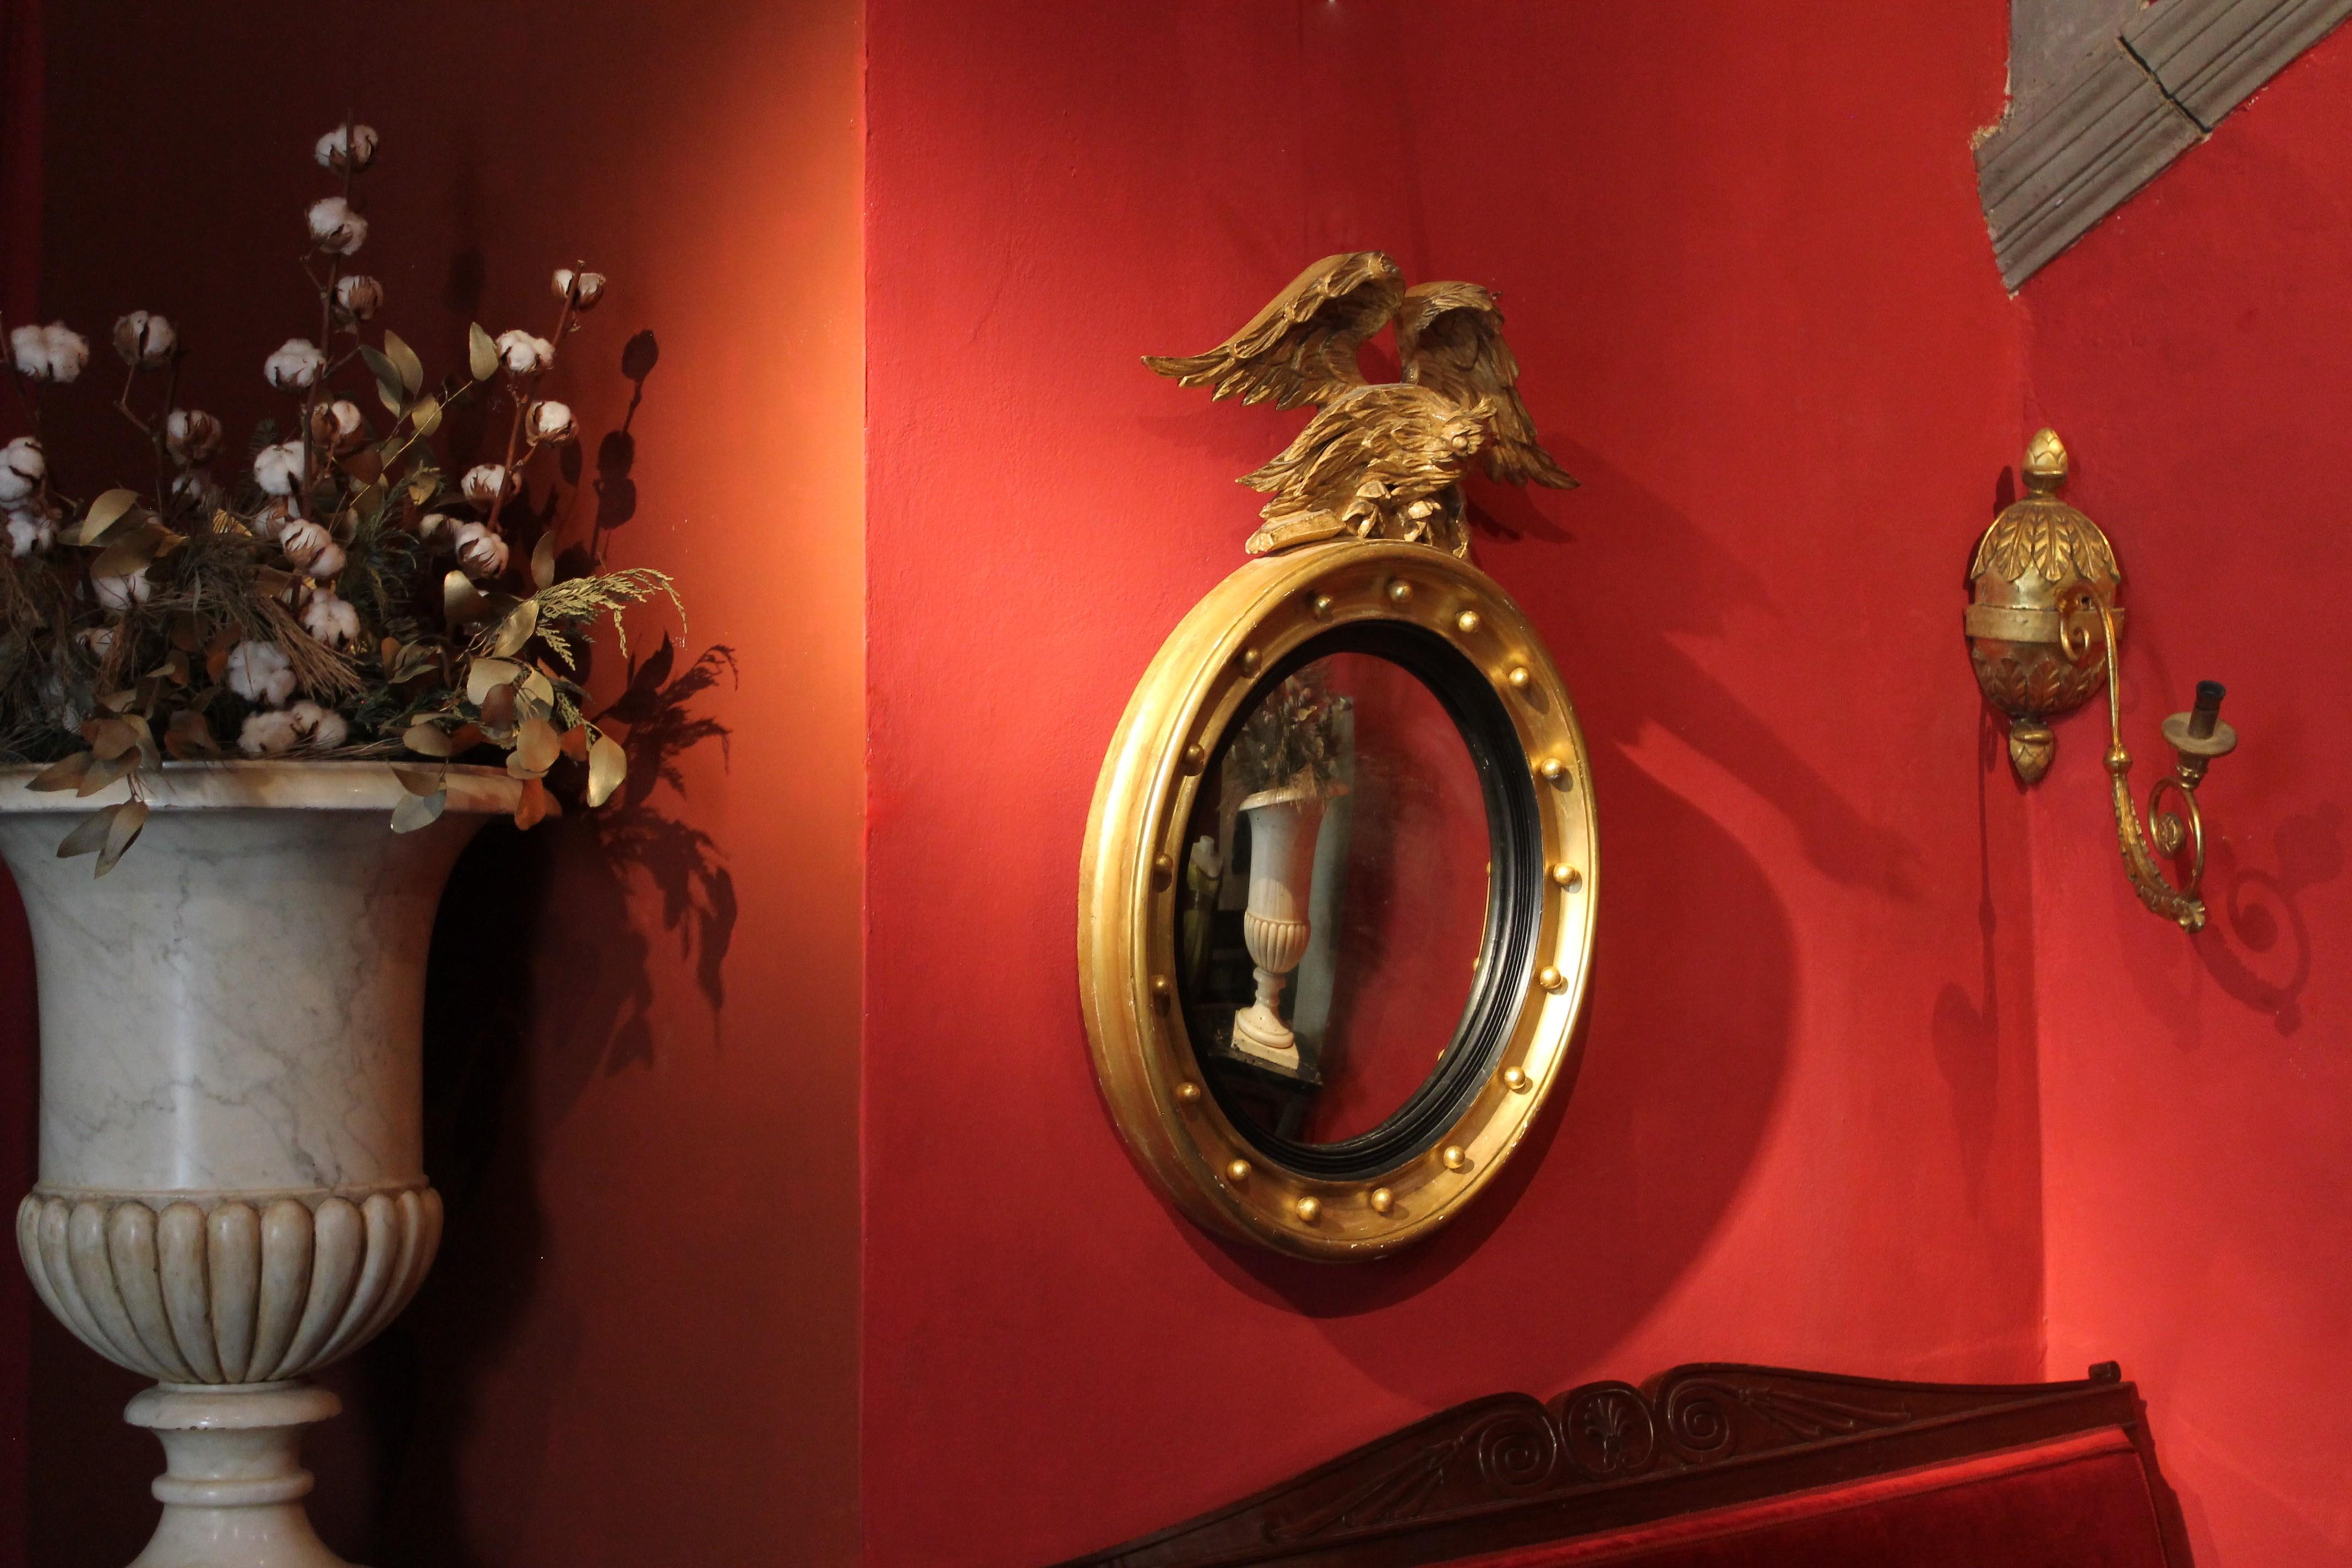 Dieser italienische, antike, konvexe Wandspiegel aus dem frühen 19. Jahrhundert mit der originalen Quecksilberspiegelplatte in einem Rahmen aus vergoldetem und ebonisiertem Holz, der von einem handgeschnitzten Adlergiebel aus vergoldetem Holz